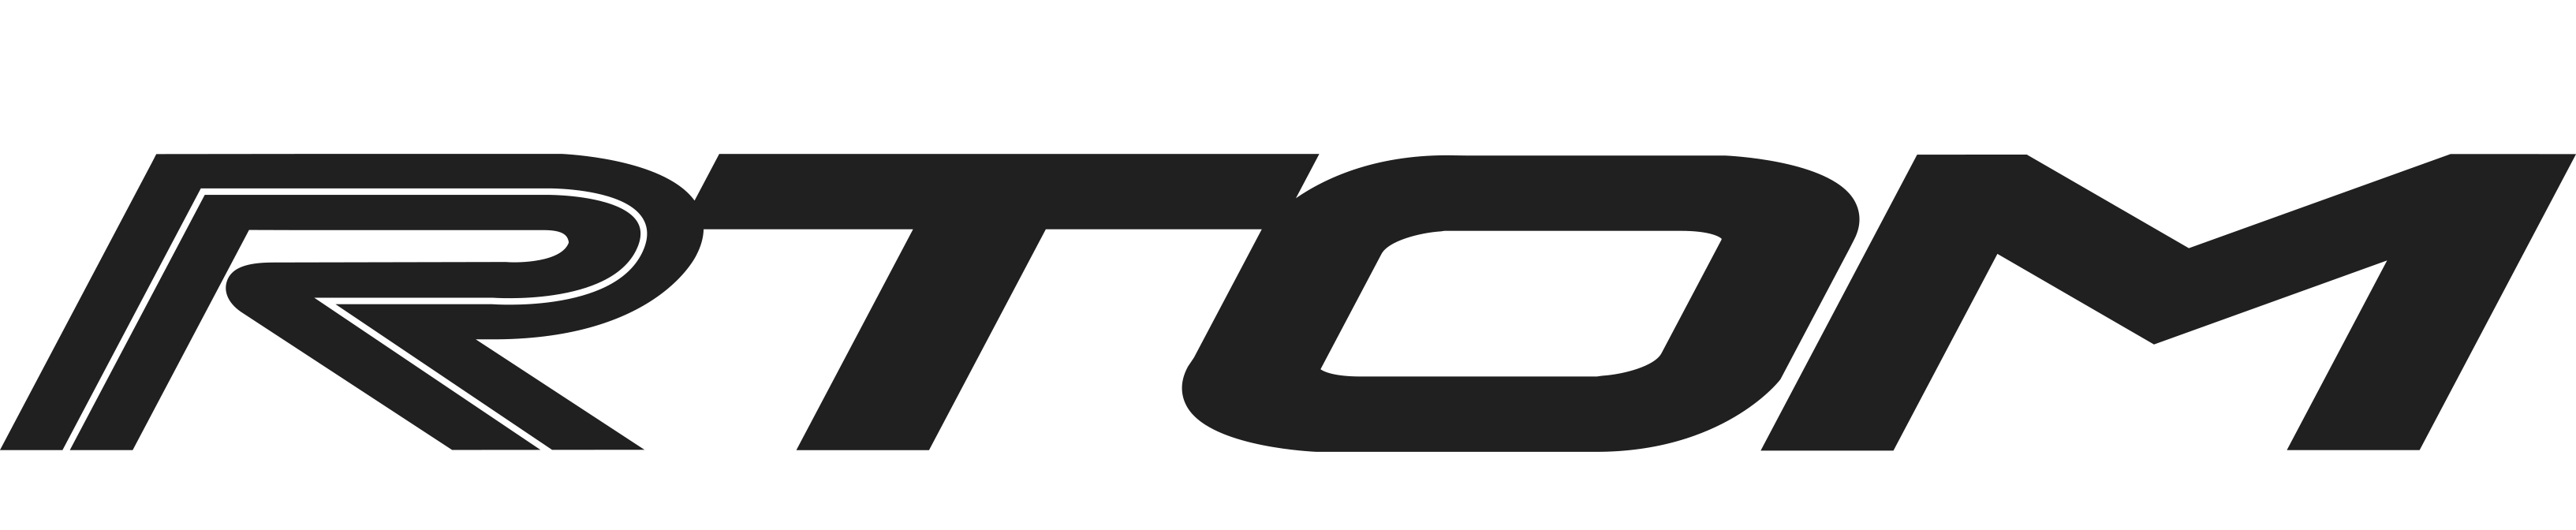 RTOM_logo_black